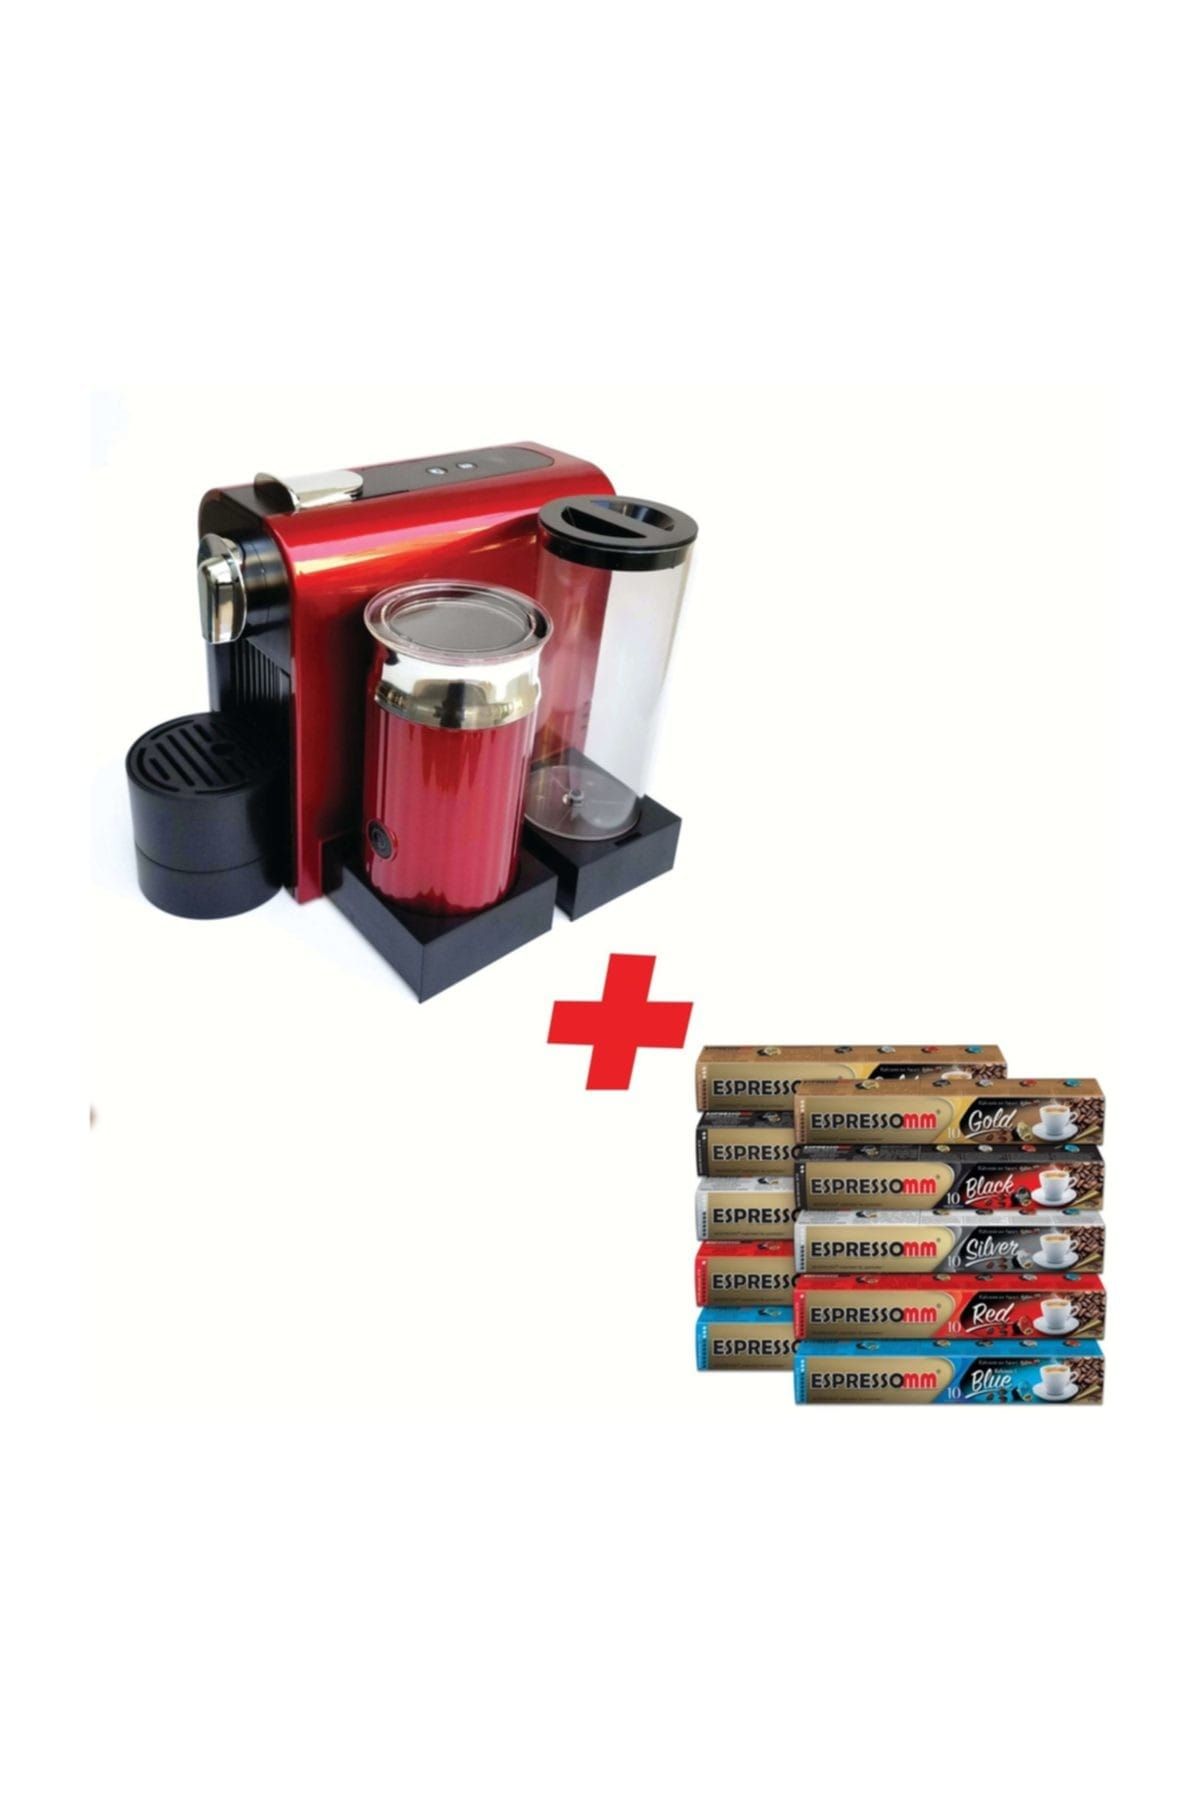 ESPRESSOMM Latte Kapsül Kahve Makinesi (Kırmızı) - Nespresso Uyumlu